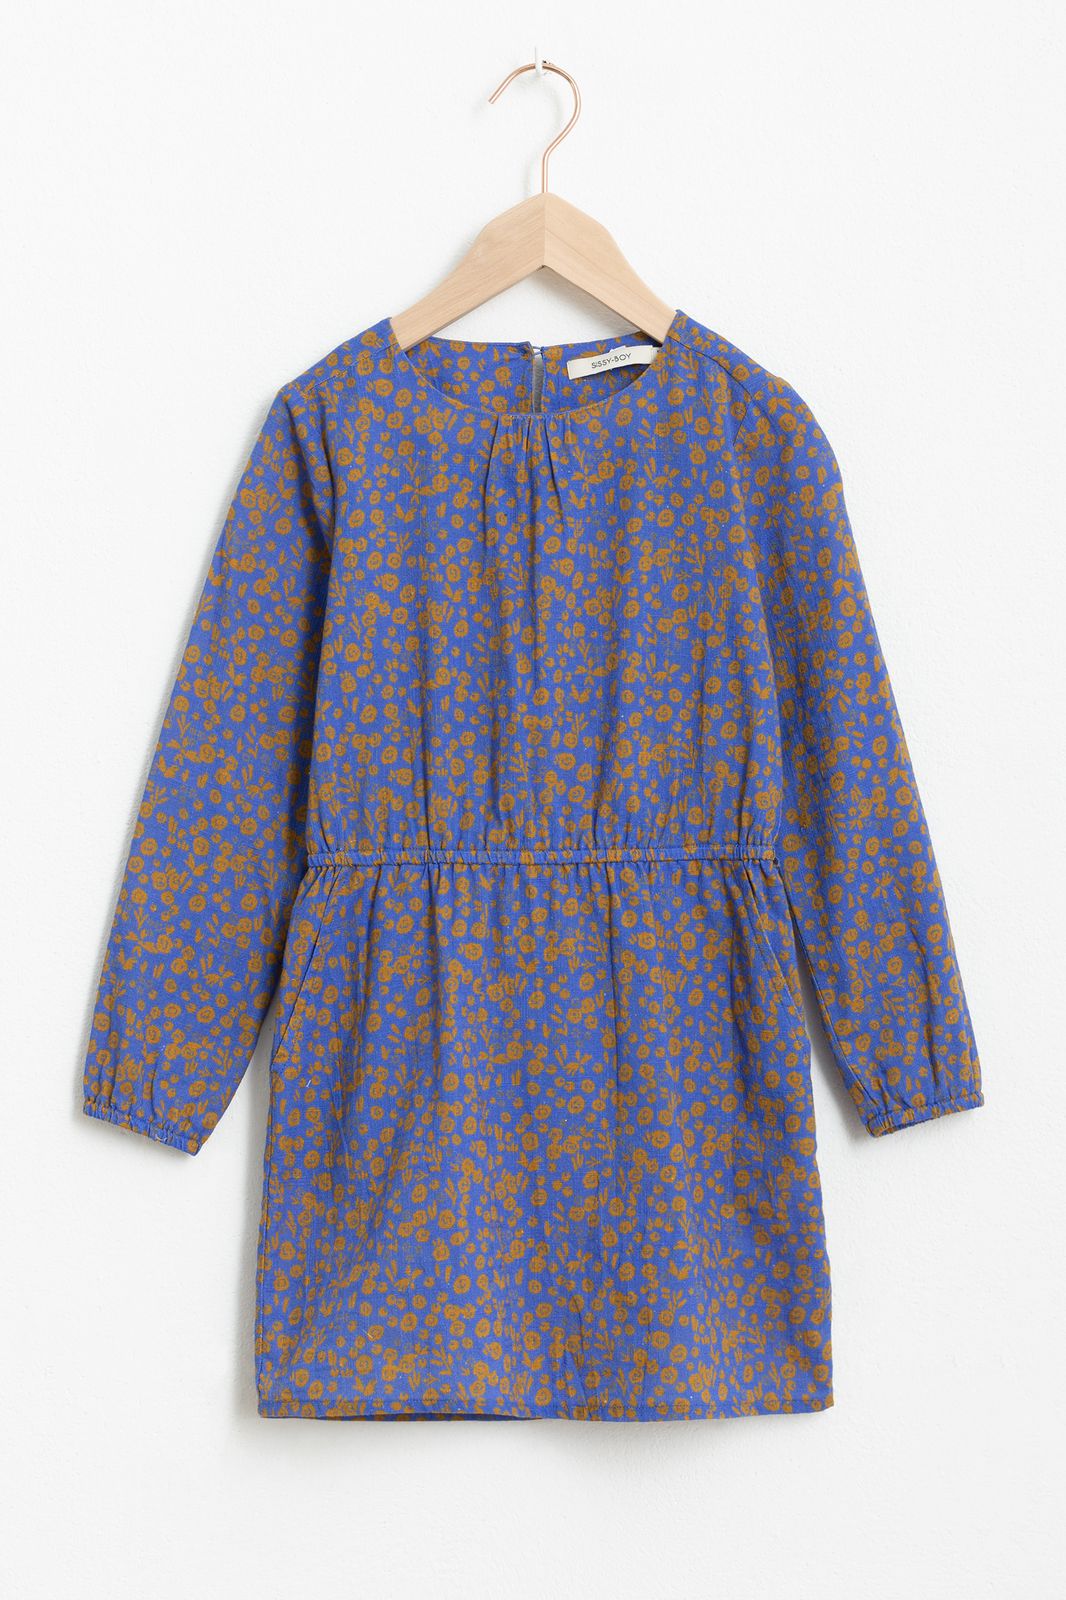 Blaues Kleid mit Print und langen Ärmeln